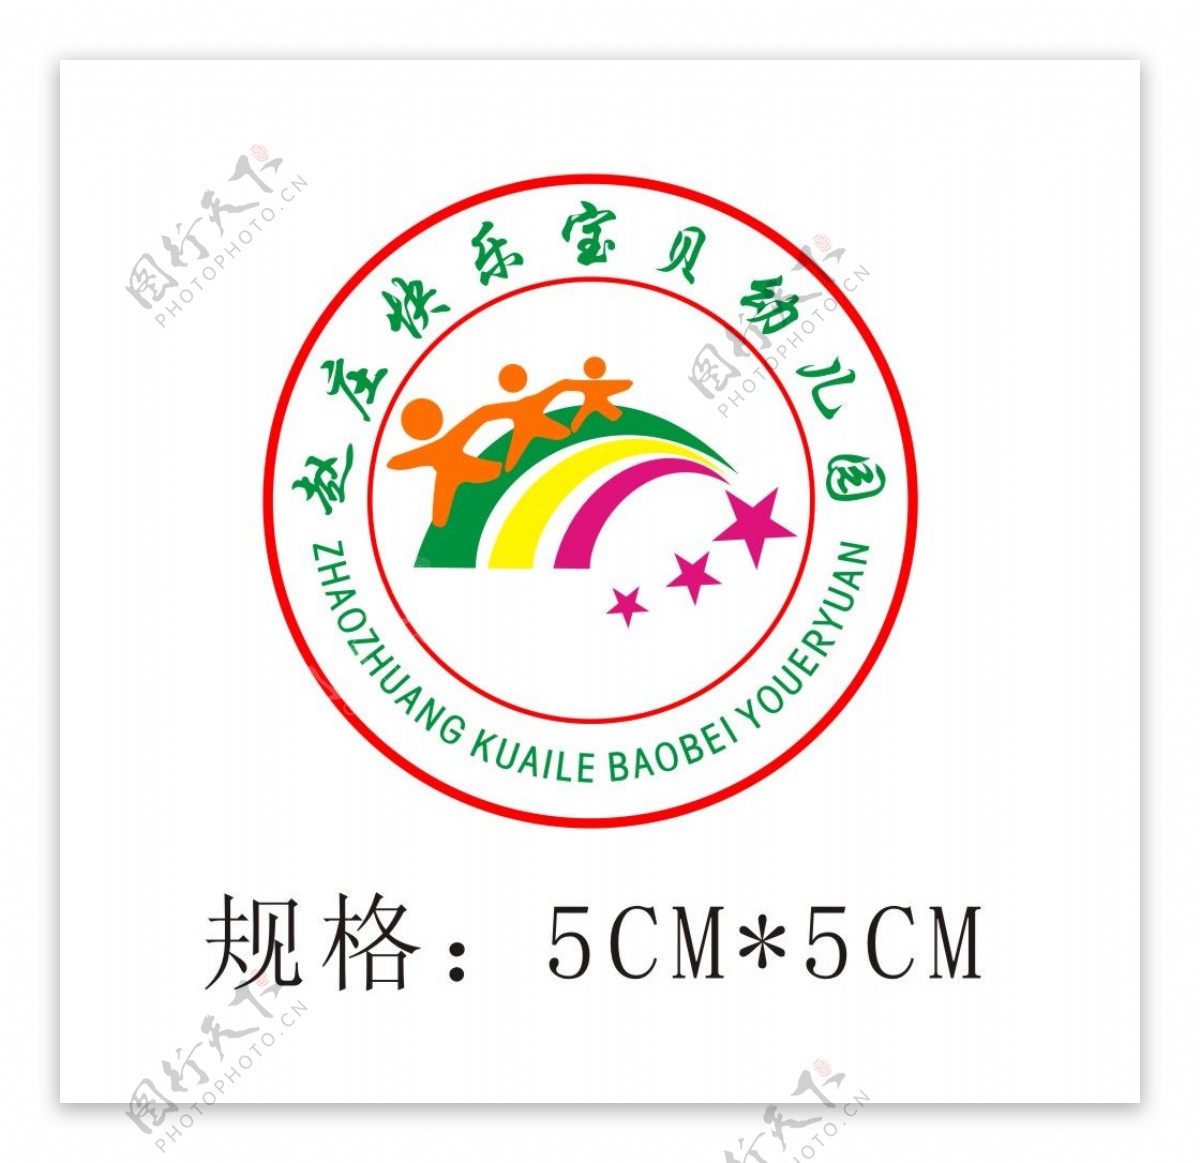 赵庄快乐宝贝幼儿园园徽logo